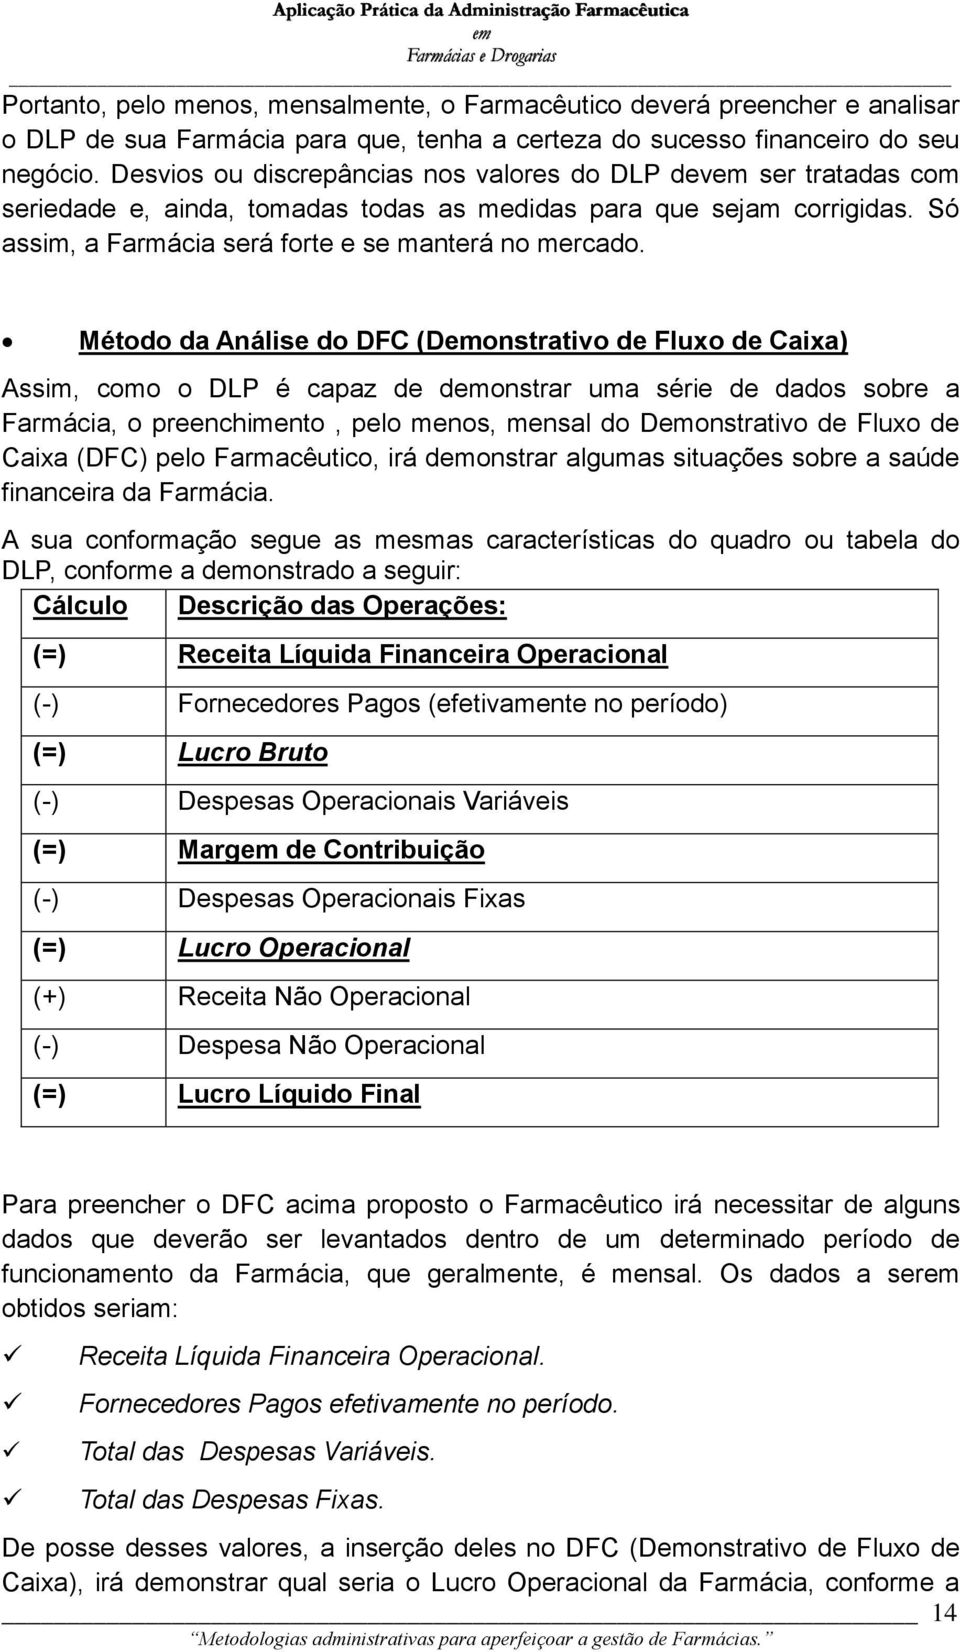 Método da Análise do DFC (Donstrativo de Fluxo de Caixa) Assim, como o DLP é capaz de donstrar uma série de dados sobre a Farmácia, o preenchimento, pelo menos, mensal do Donstrativo de Fluxo de